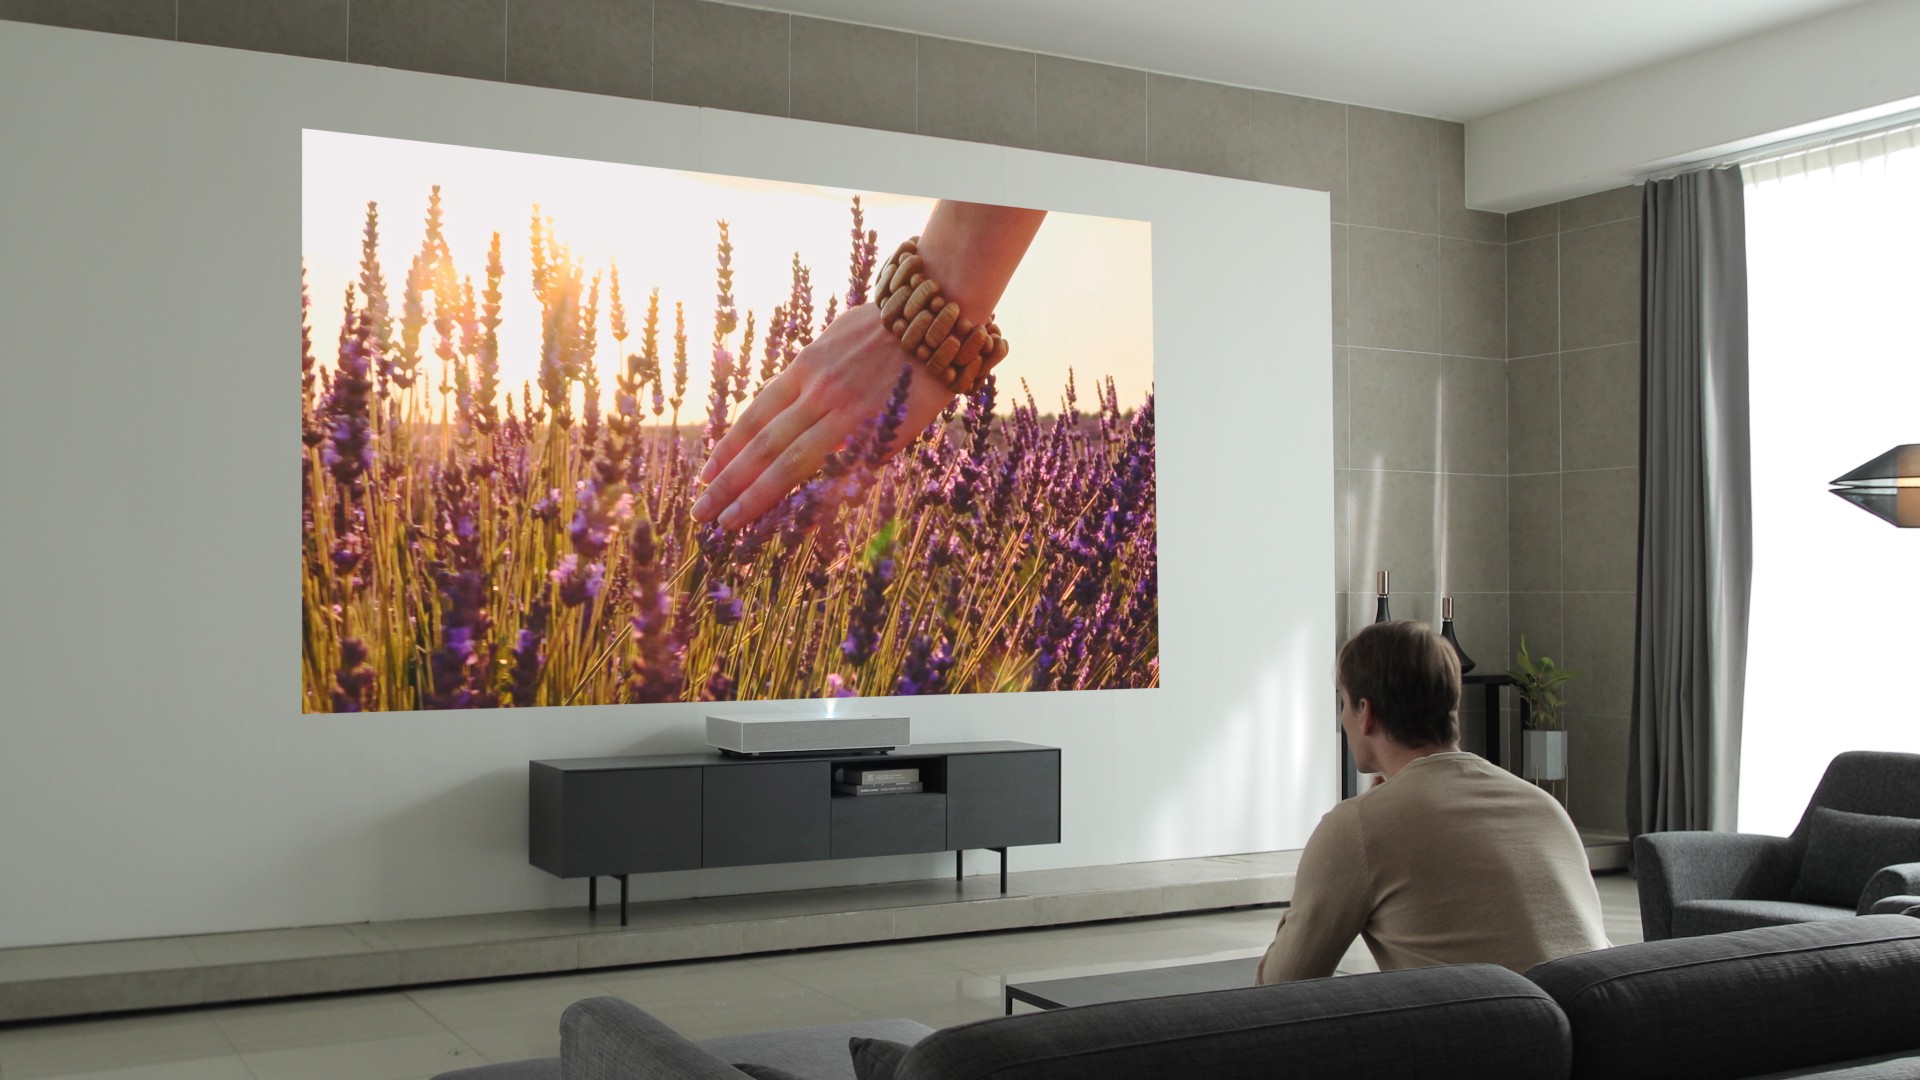 kaustisk meget fint Ydmyg Super projektor klarer 120 tommer tv | Leifshows